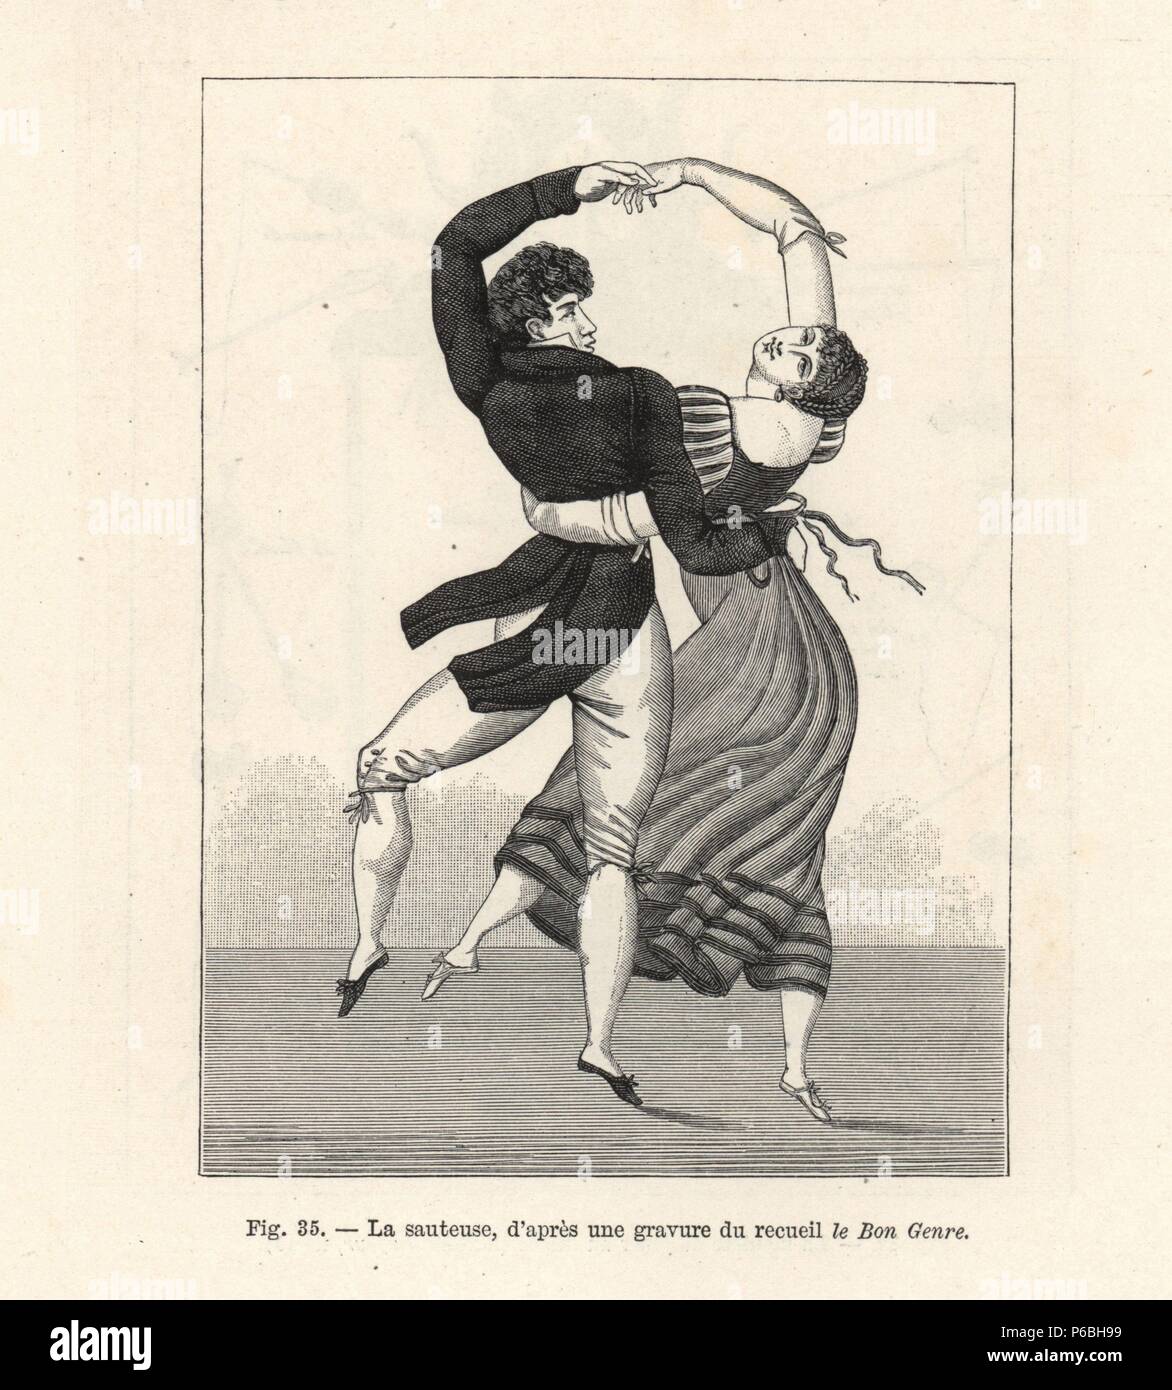 French couple dancing la Sauteuse, a pair dance popular circa 1800. Woodcut engraving from Paul Lacroix's 'Directoire, Consulat et Empire,' Paris, 1884. Stock Photo